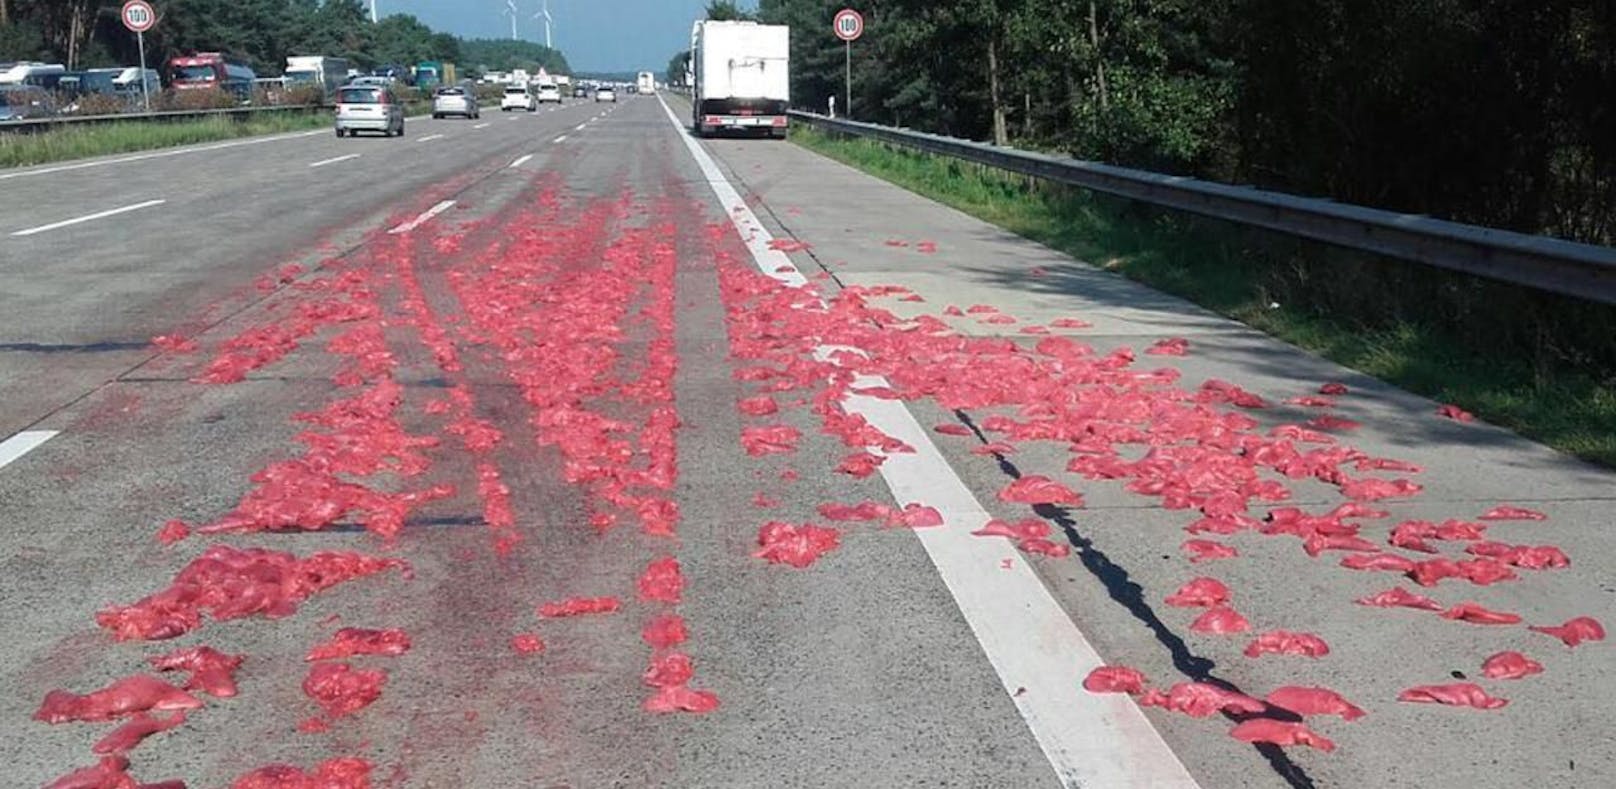 Der Lkw hinterließ ein regelrechtes Schlachtfeld auf der Autobahn